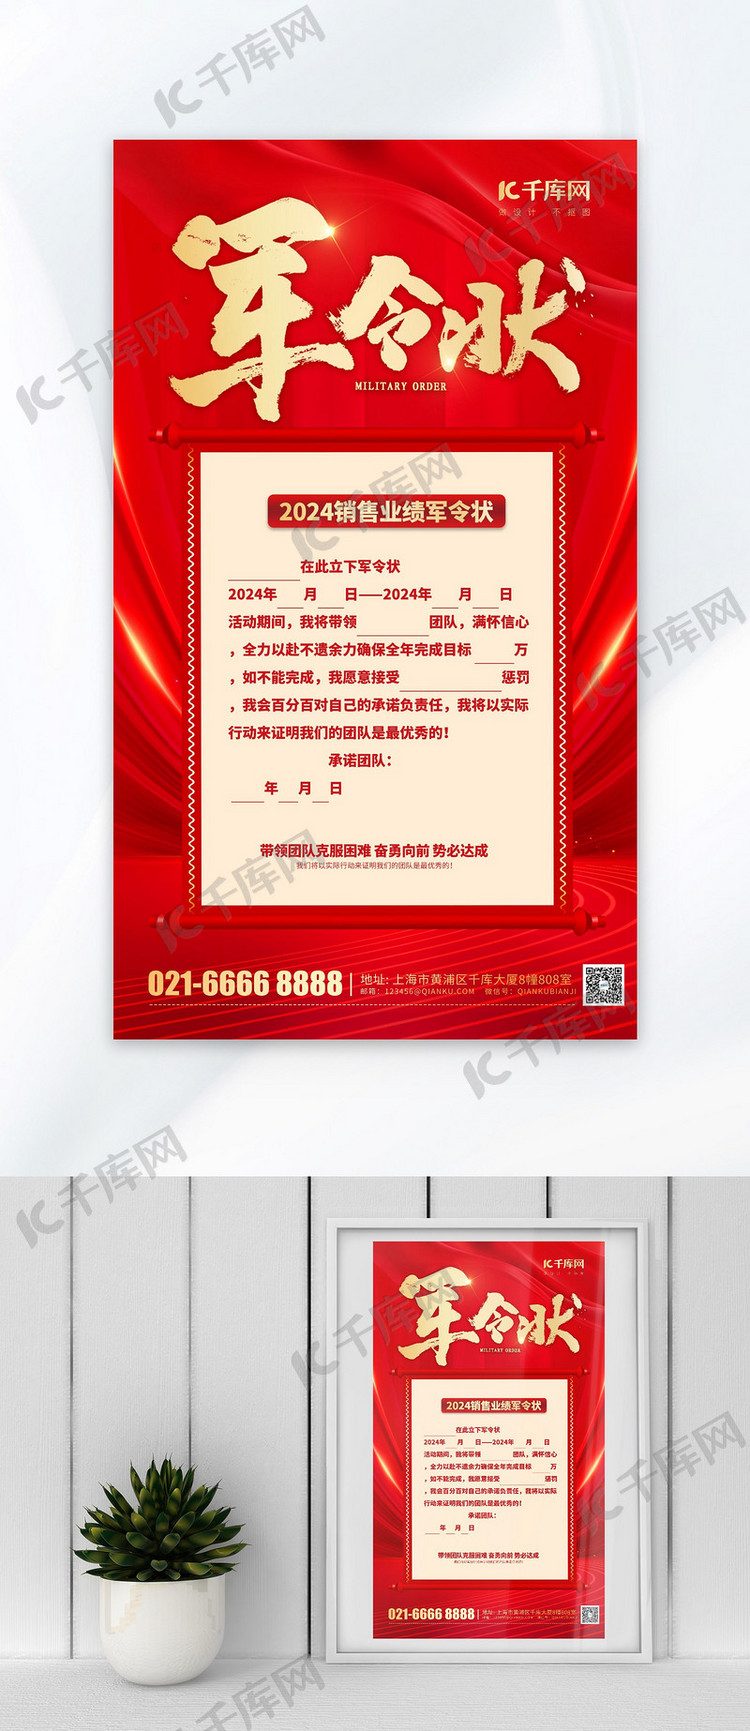 销售业绩军令状红色大气海报广告宣传海报模板